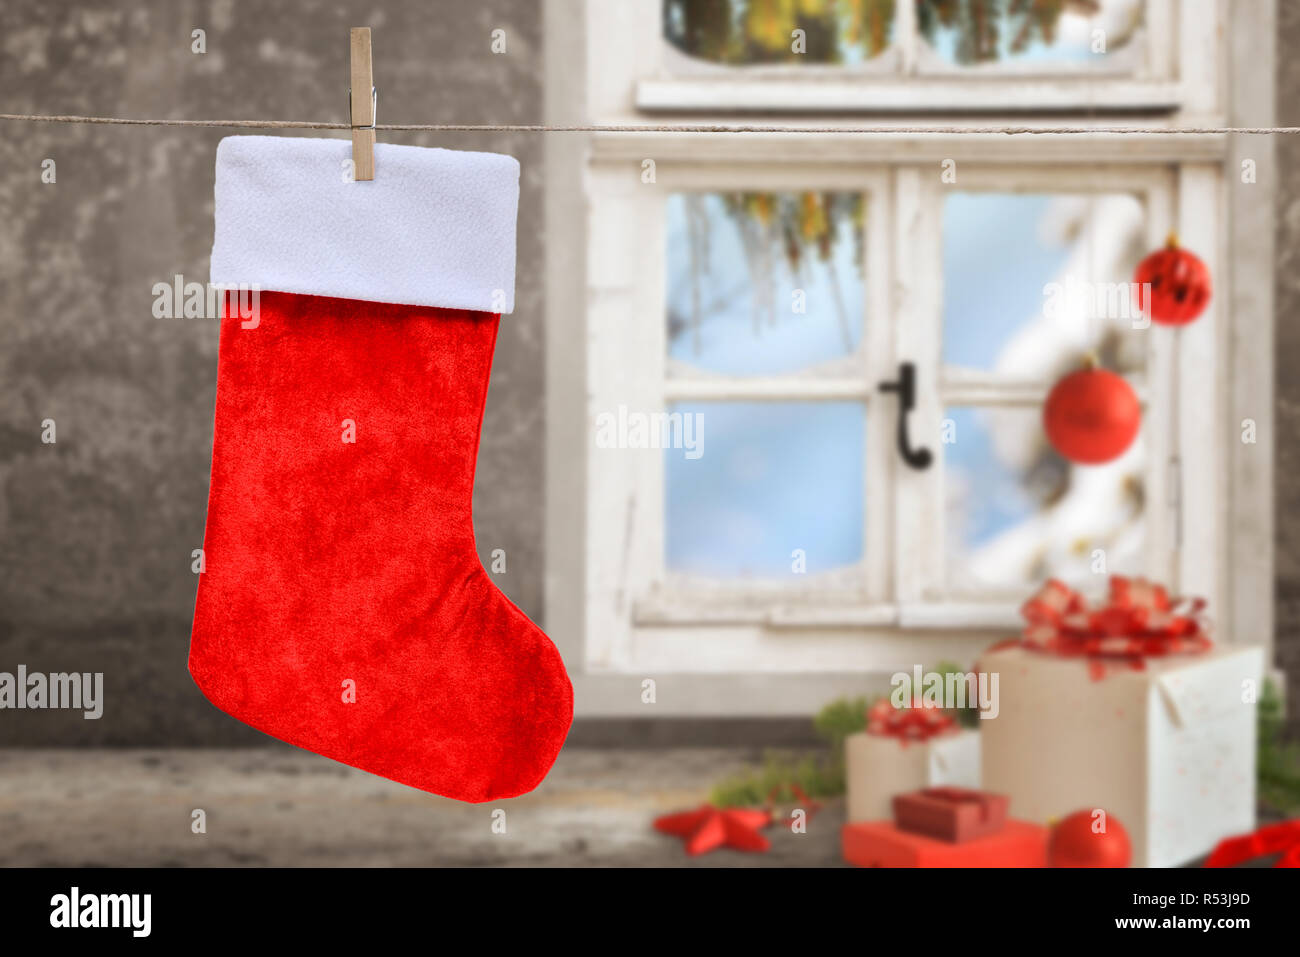 Vuoto calza di Natale appeso a una fune. Pulire il calzino per mockup, testo di saluto. Regali di natale, palline, decorazioni e la finestra in background. Foto Stock